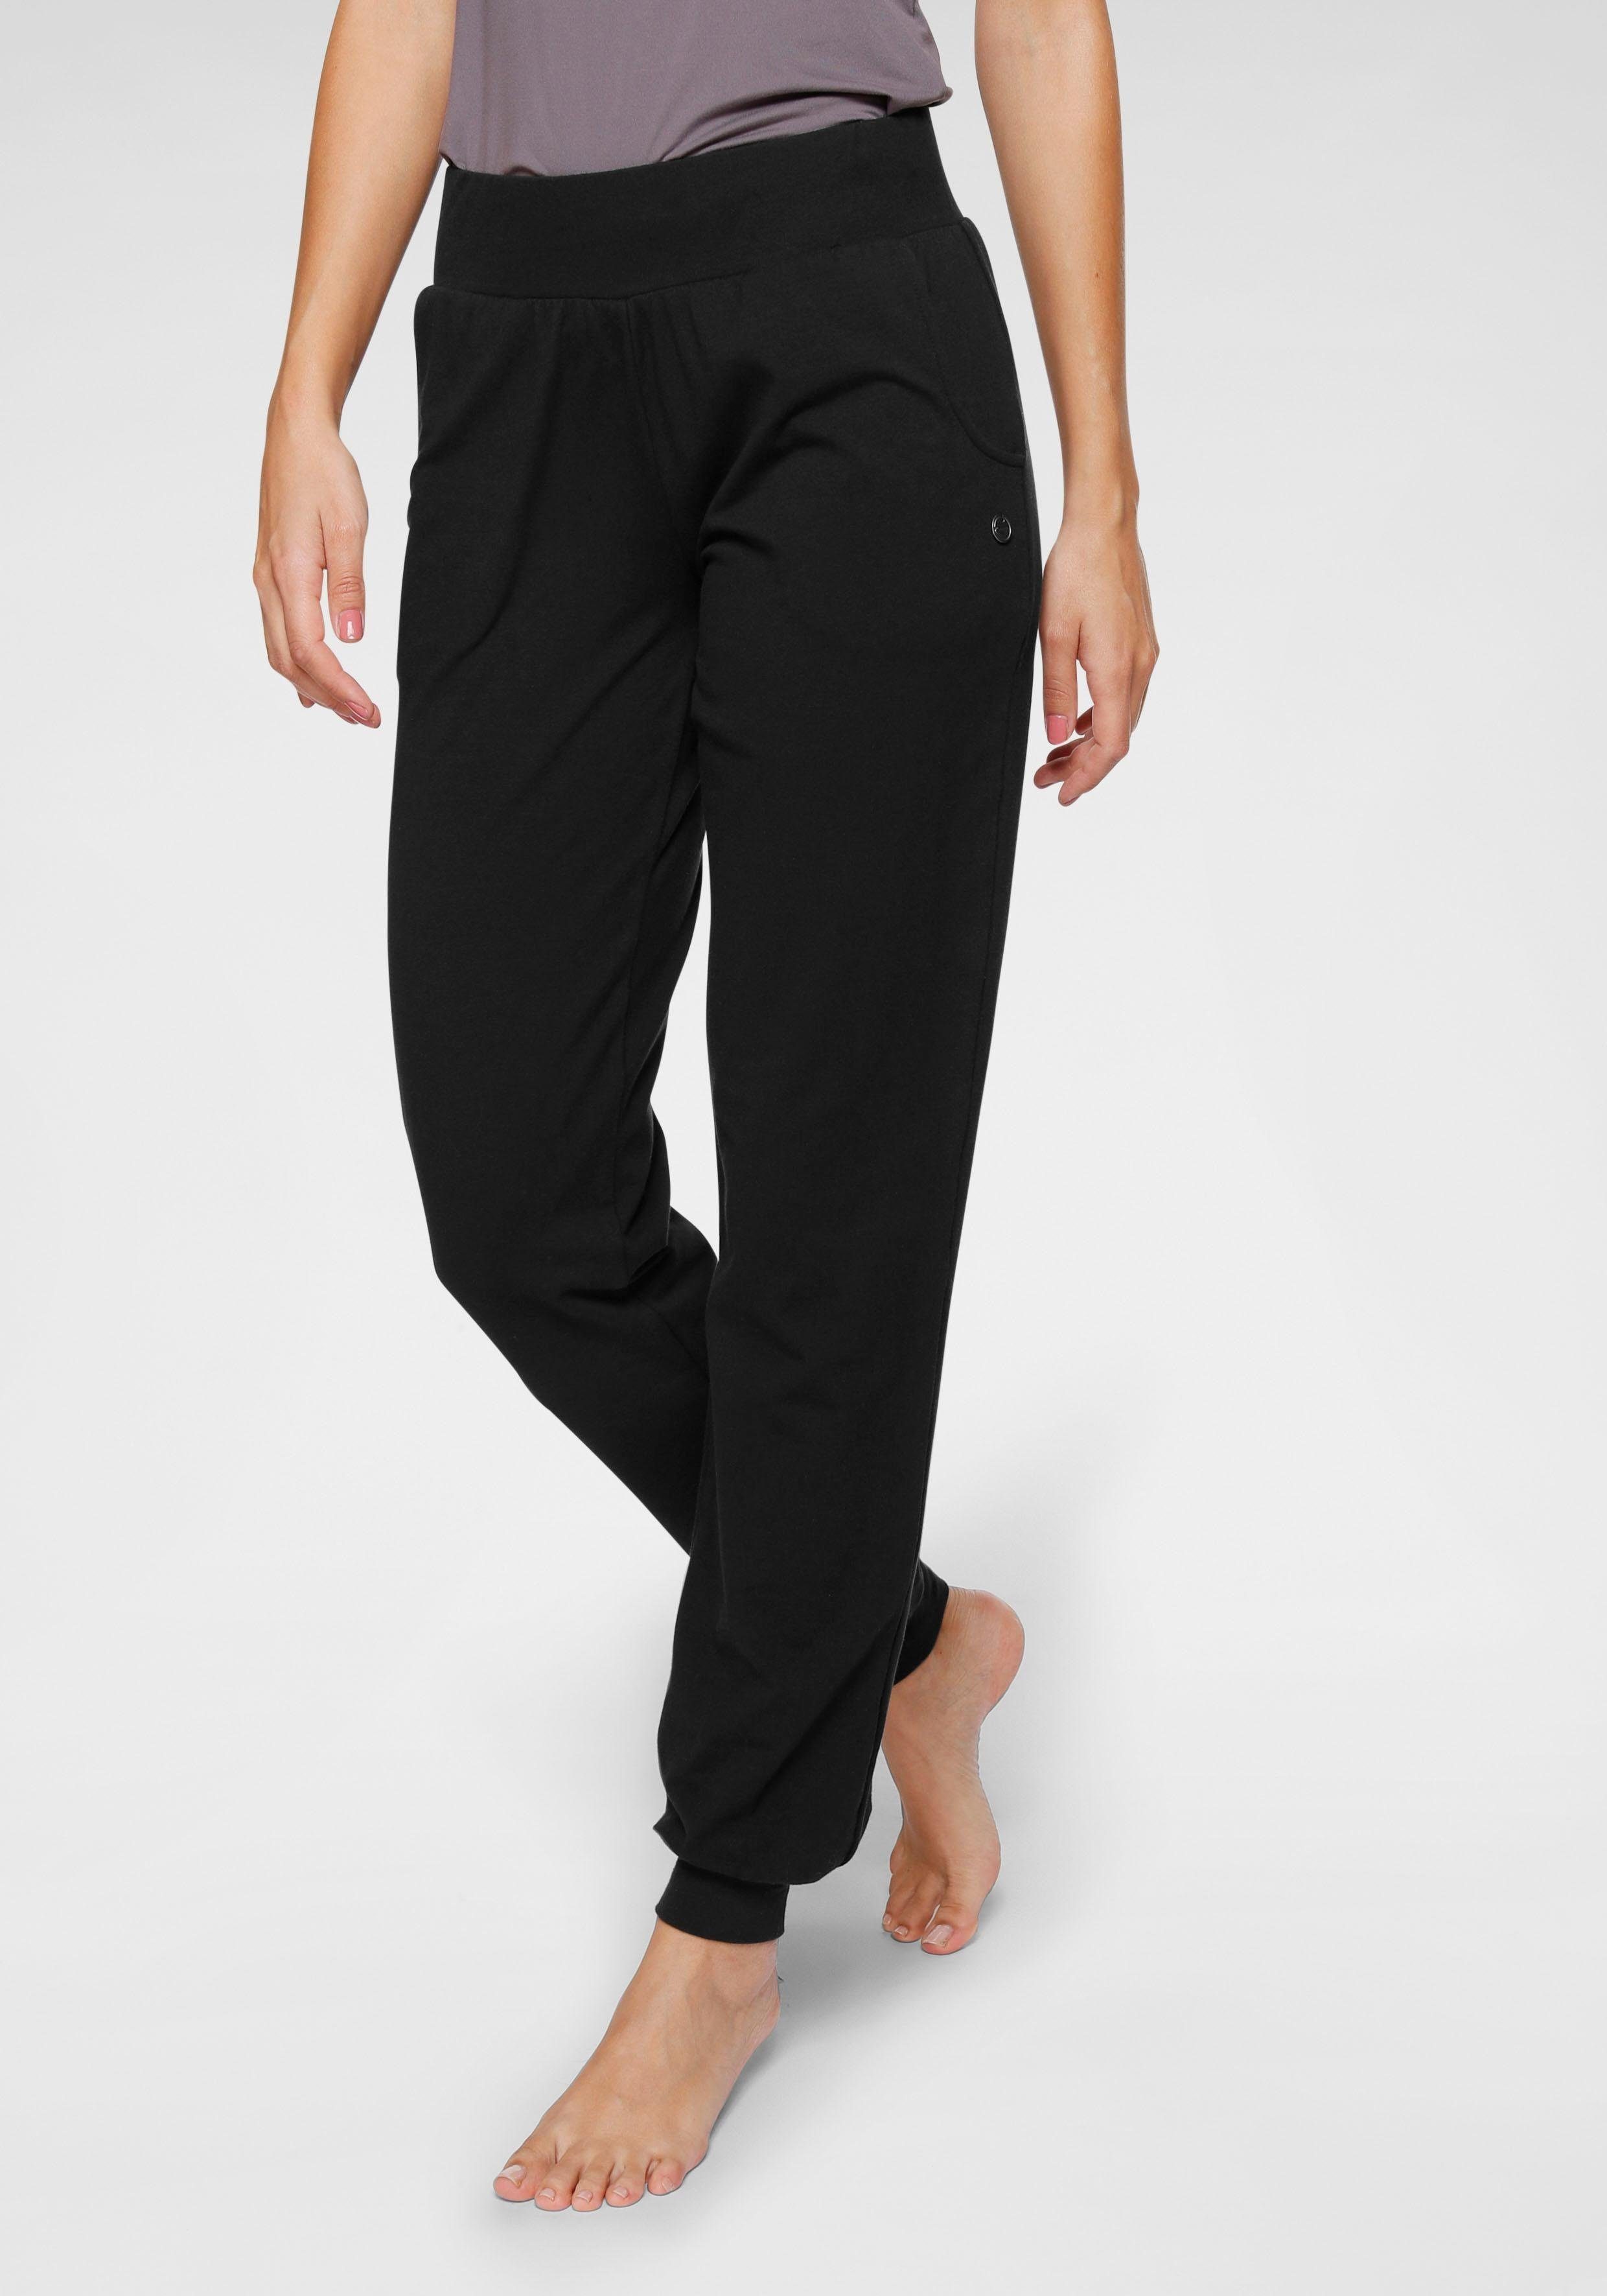 Ocean Sportswear Yogahose Soulwear - Yoga & Relax Pants - Loose Fit schwarz